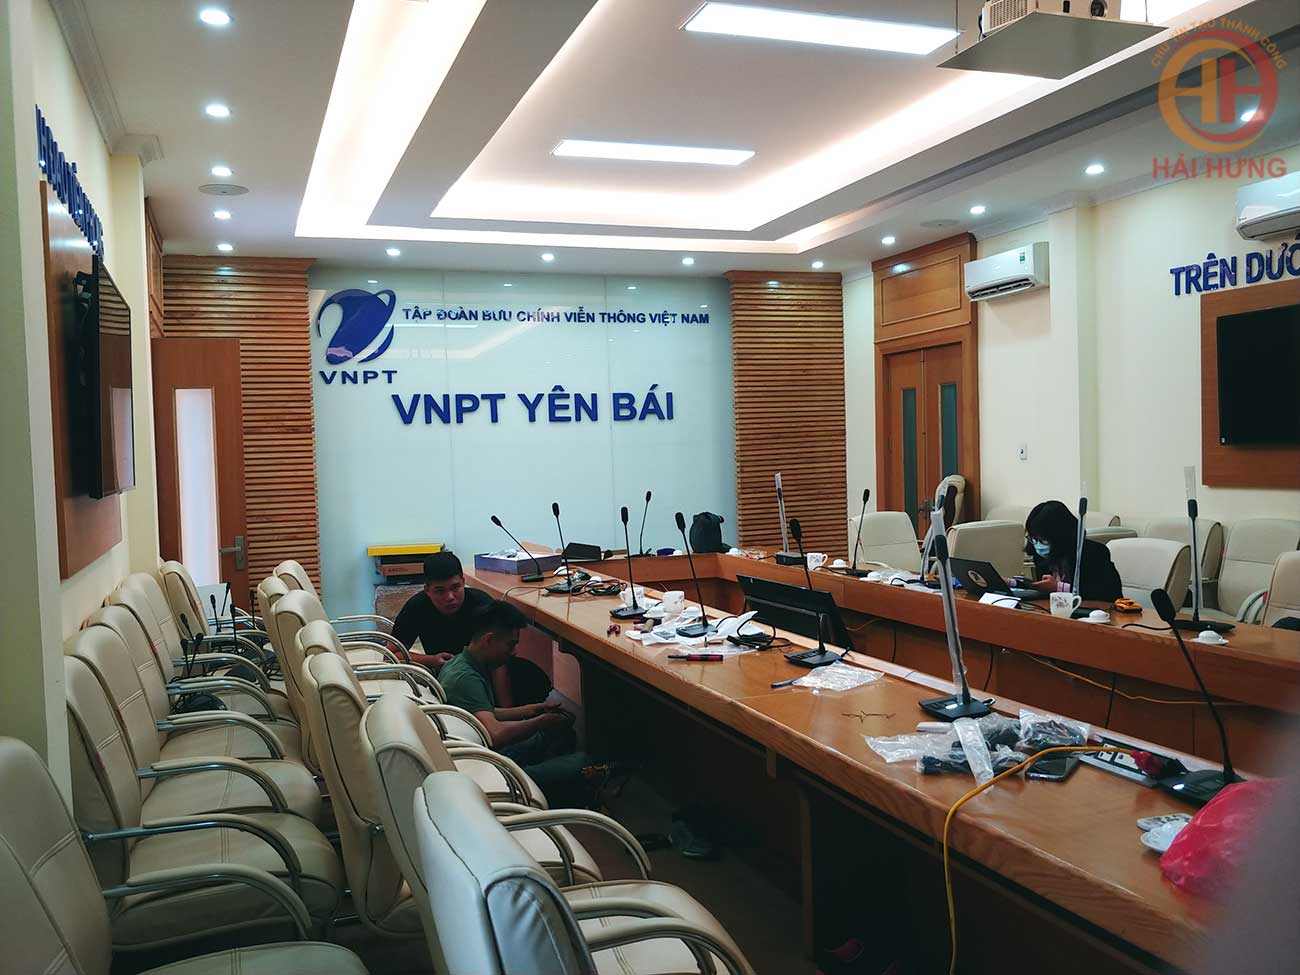 Lắp đặt hệ thống âm thanh hội thảo HAI-3526 cho phòng họp VNPT Yên Bái